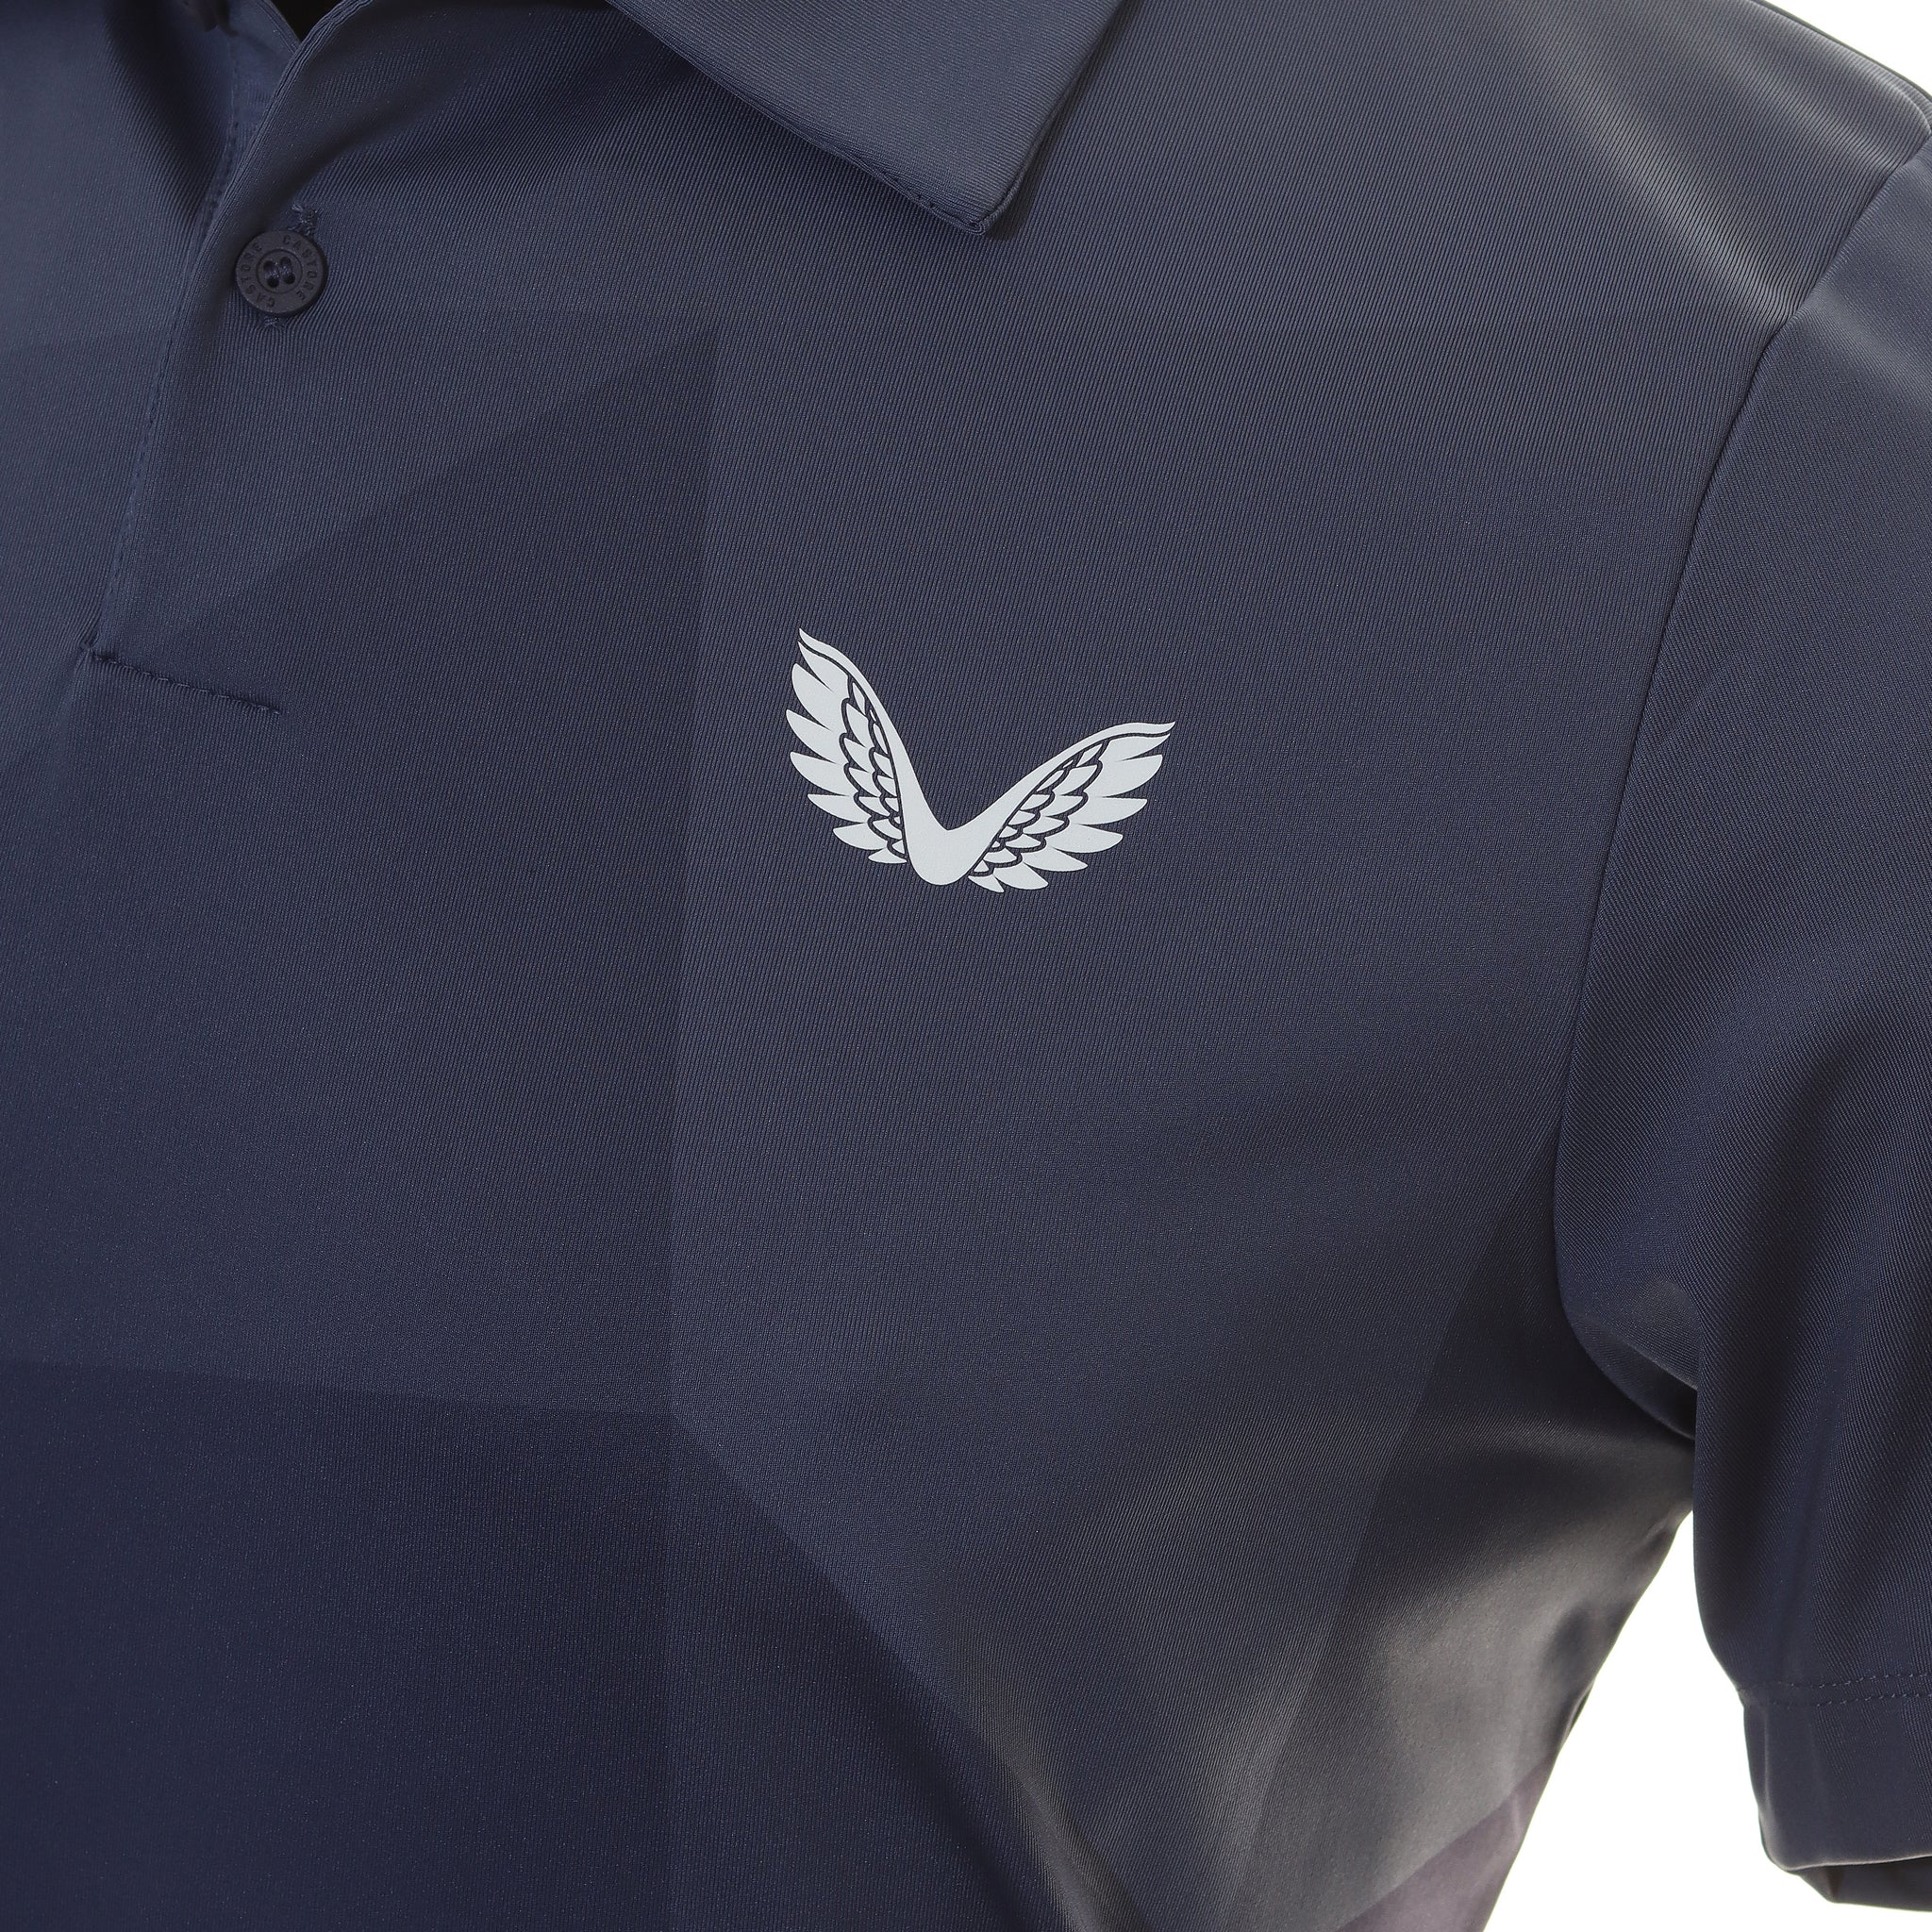 castore-printed-golf-polo-shirt-cma30363-navy